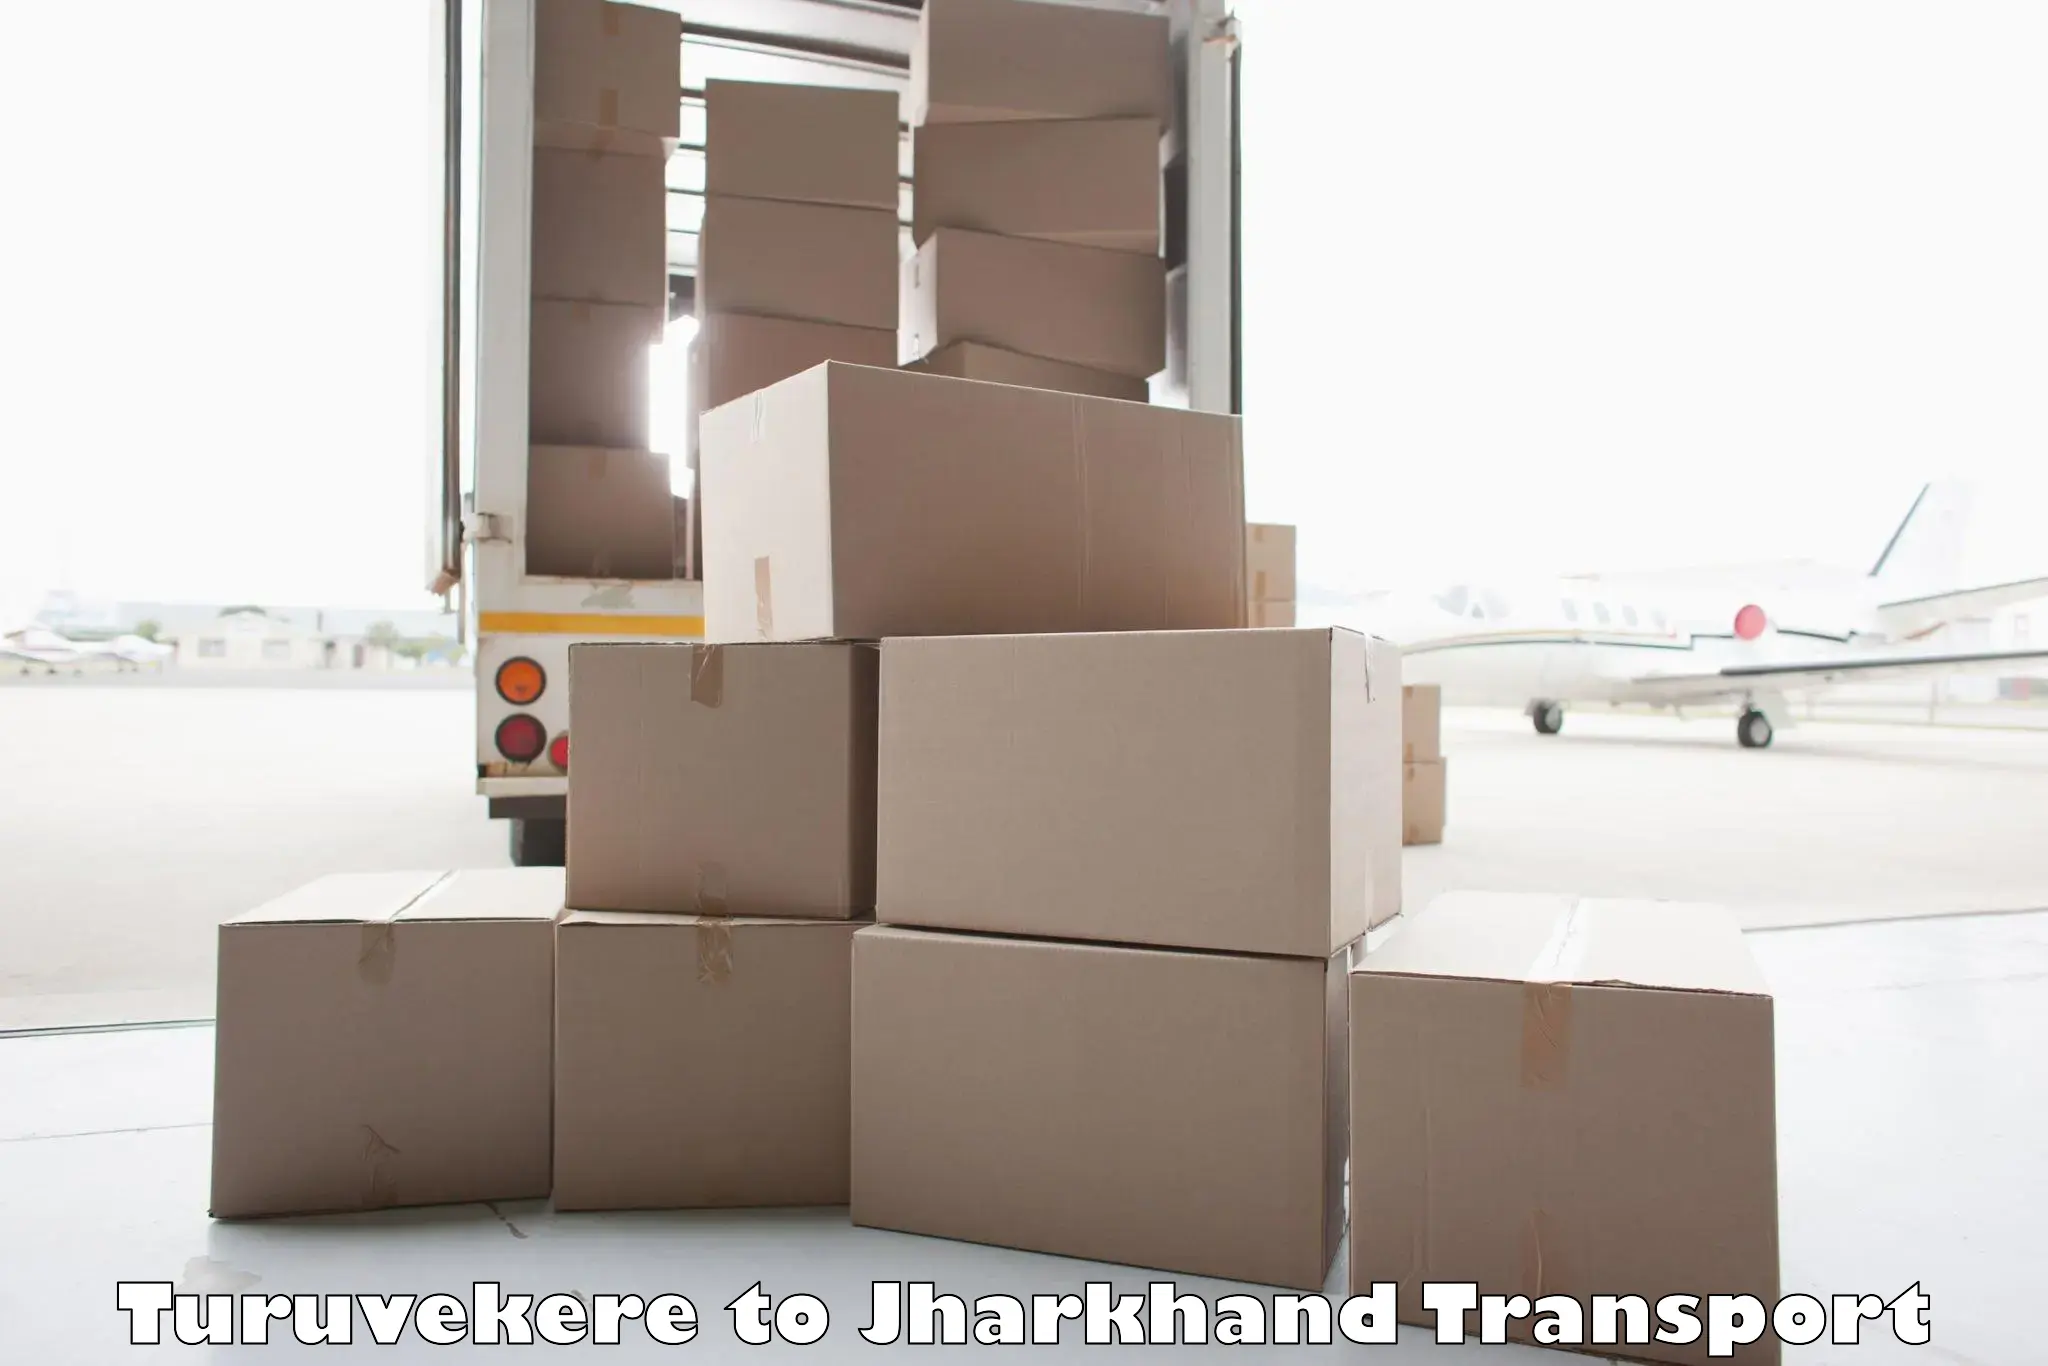 Cargo transportation services Turuvekere to Mahagama